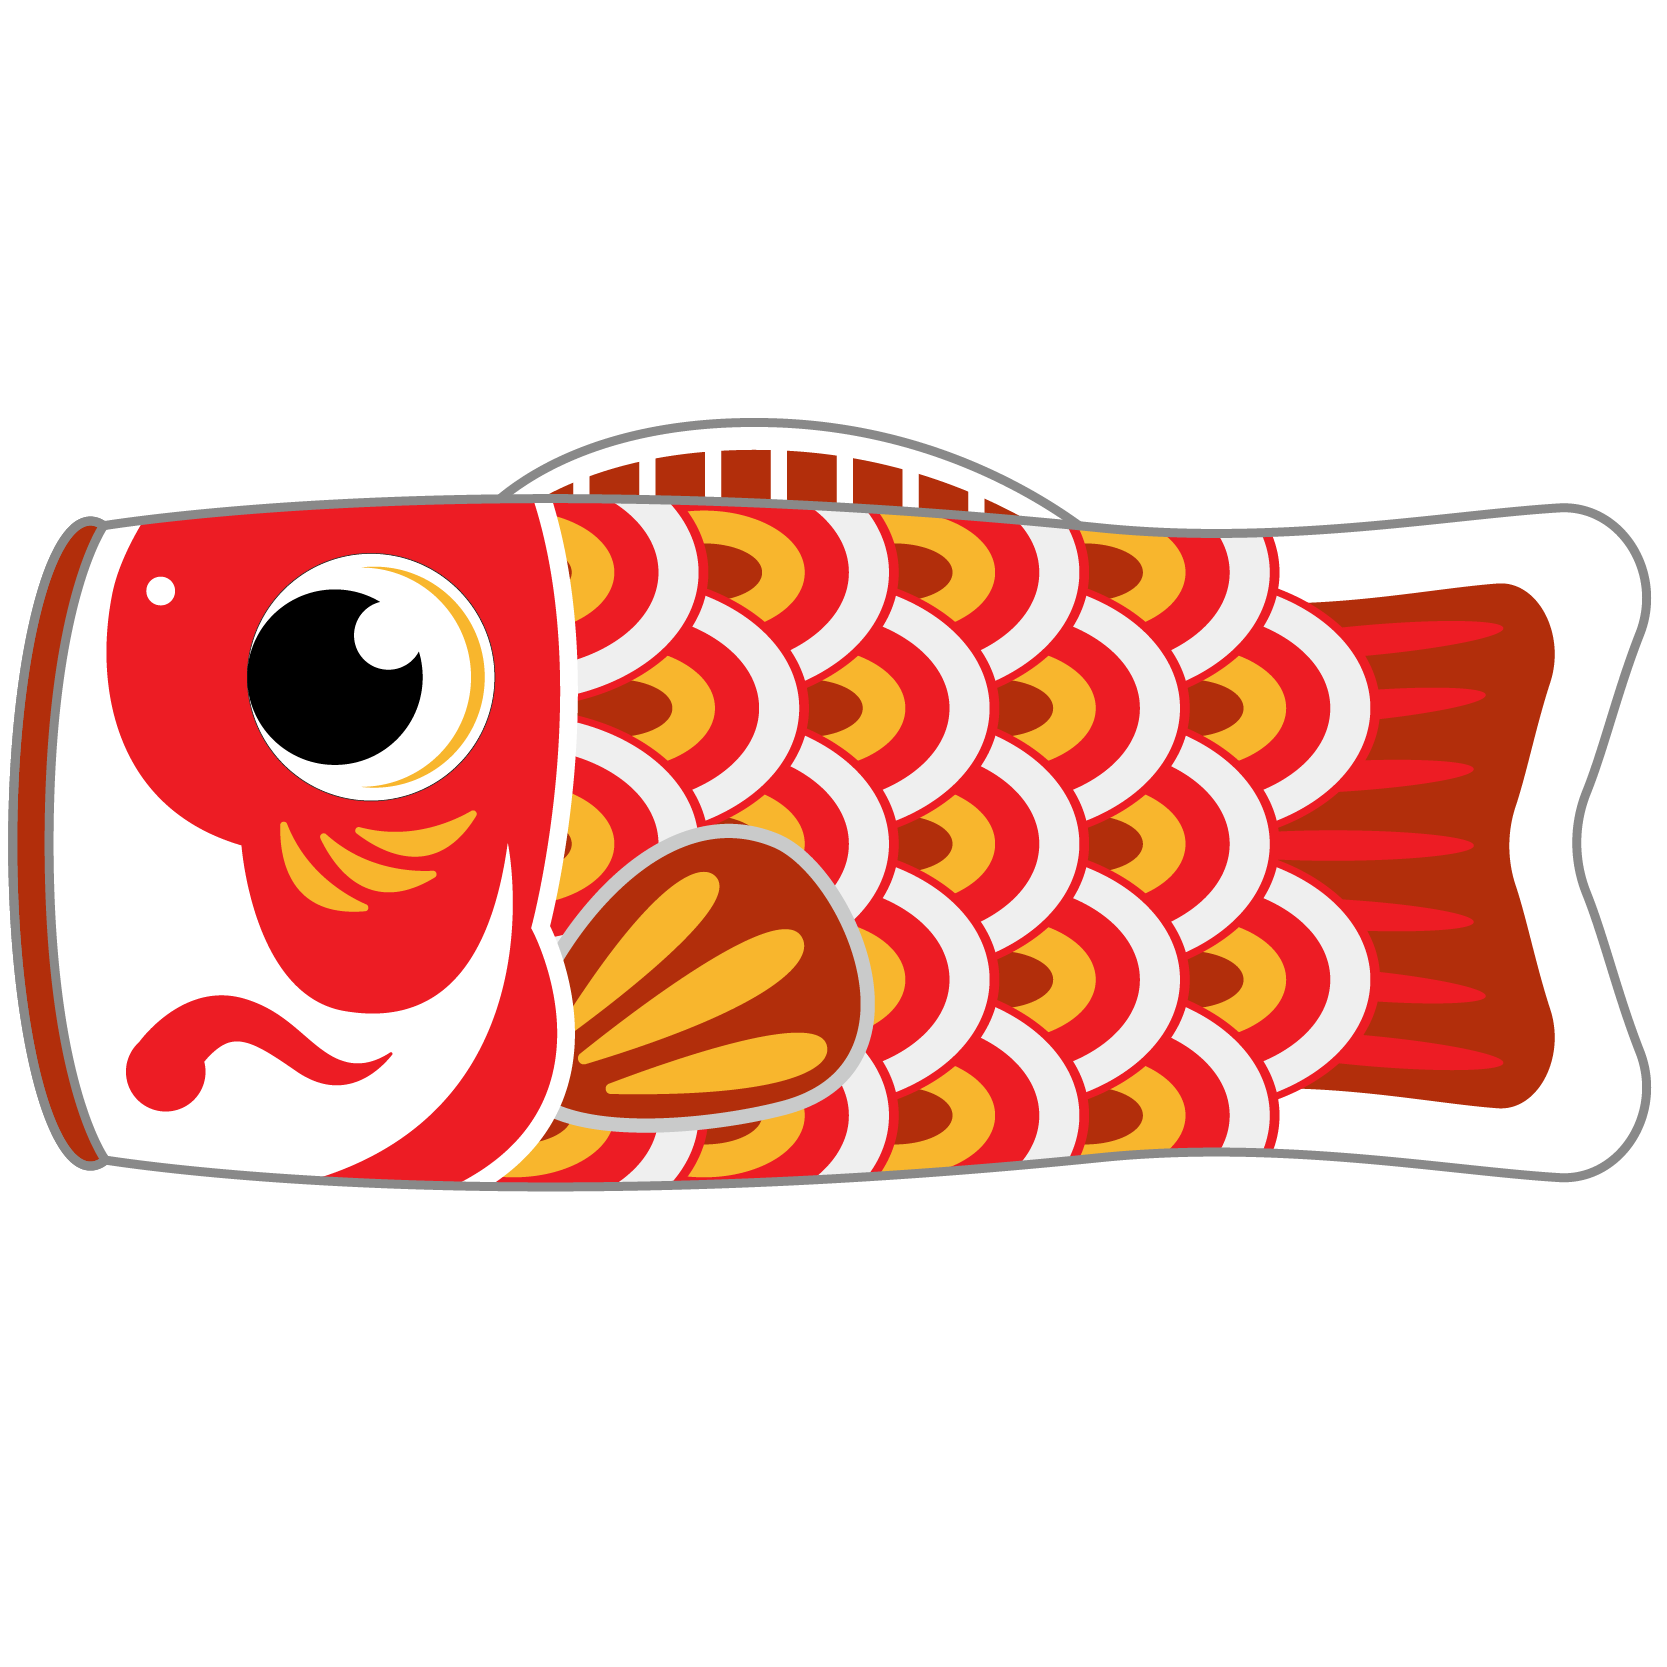 商用フリー 無料イラスト 5月端午の節句 こいのぼり 鯉のぼり Tangonosekku14 商用ok フリー素材集 ナイスなイラスト